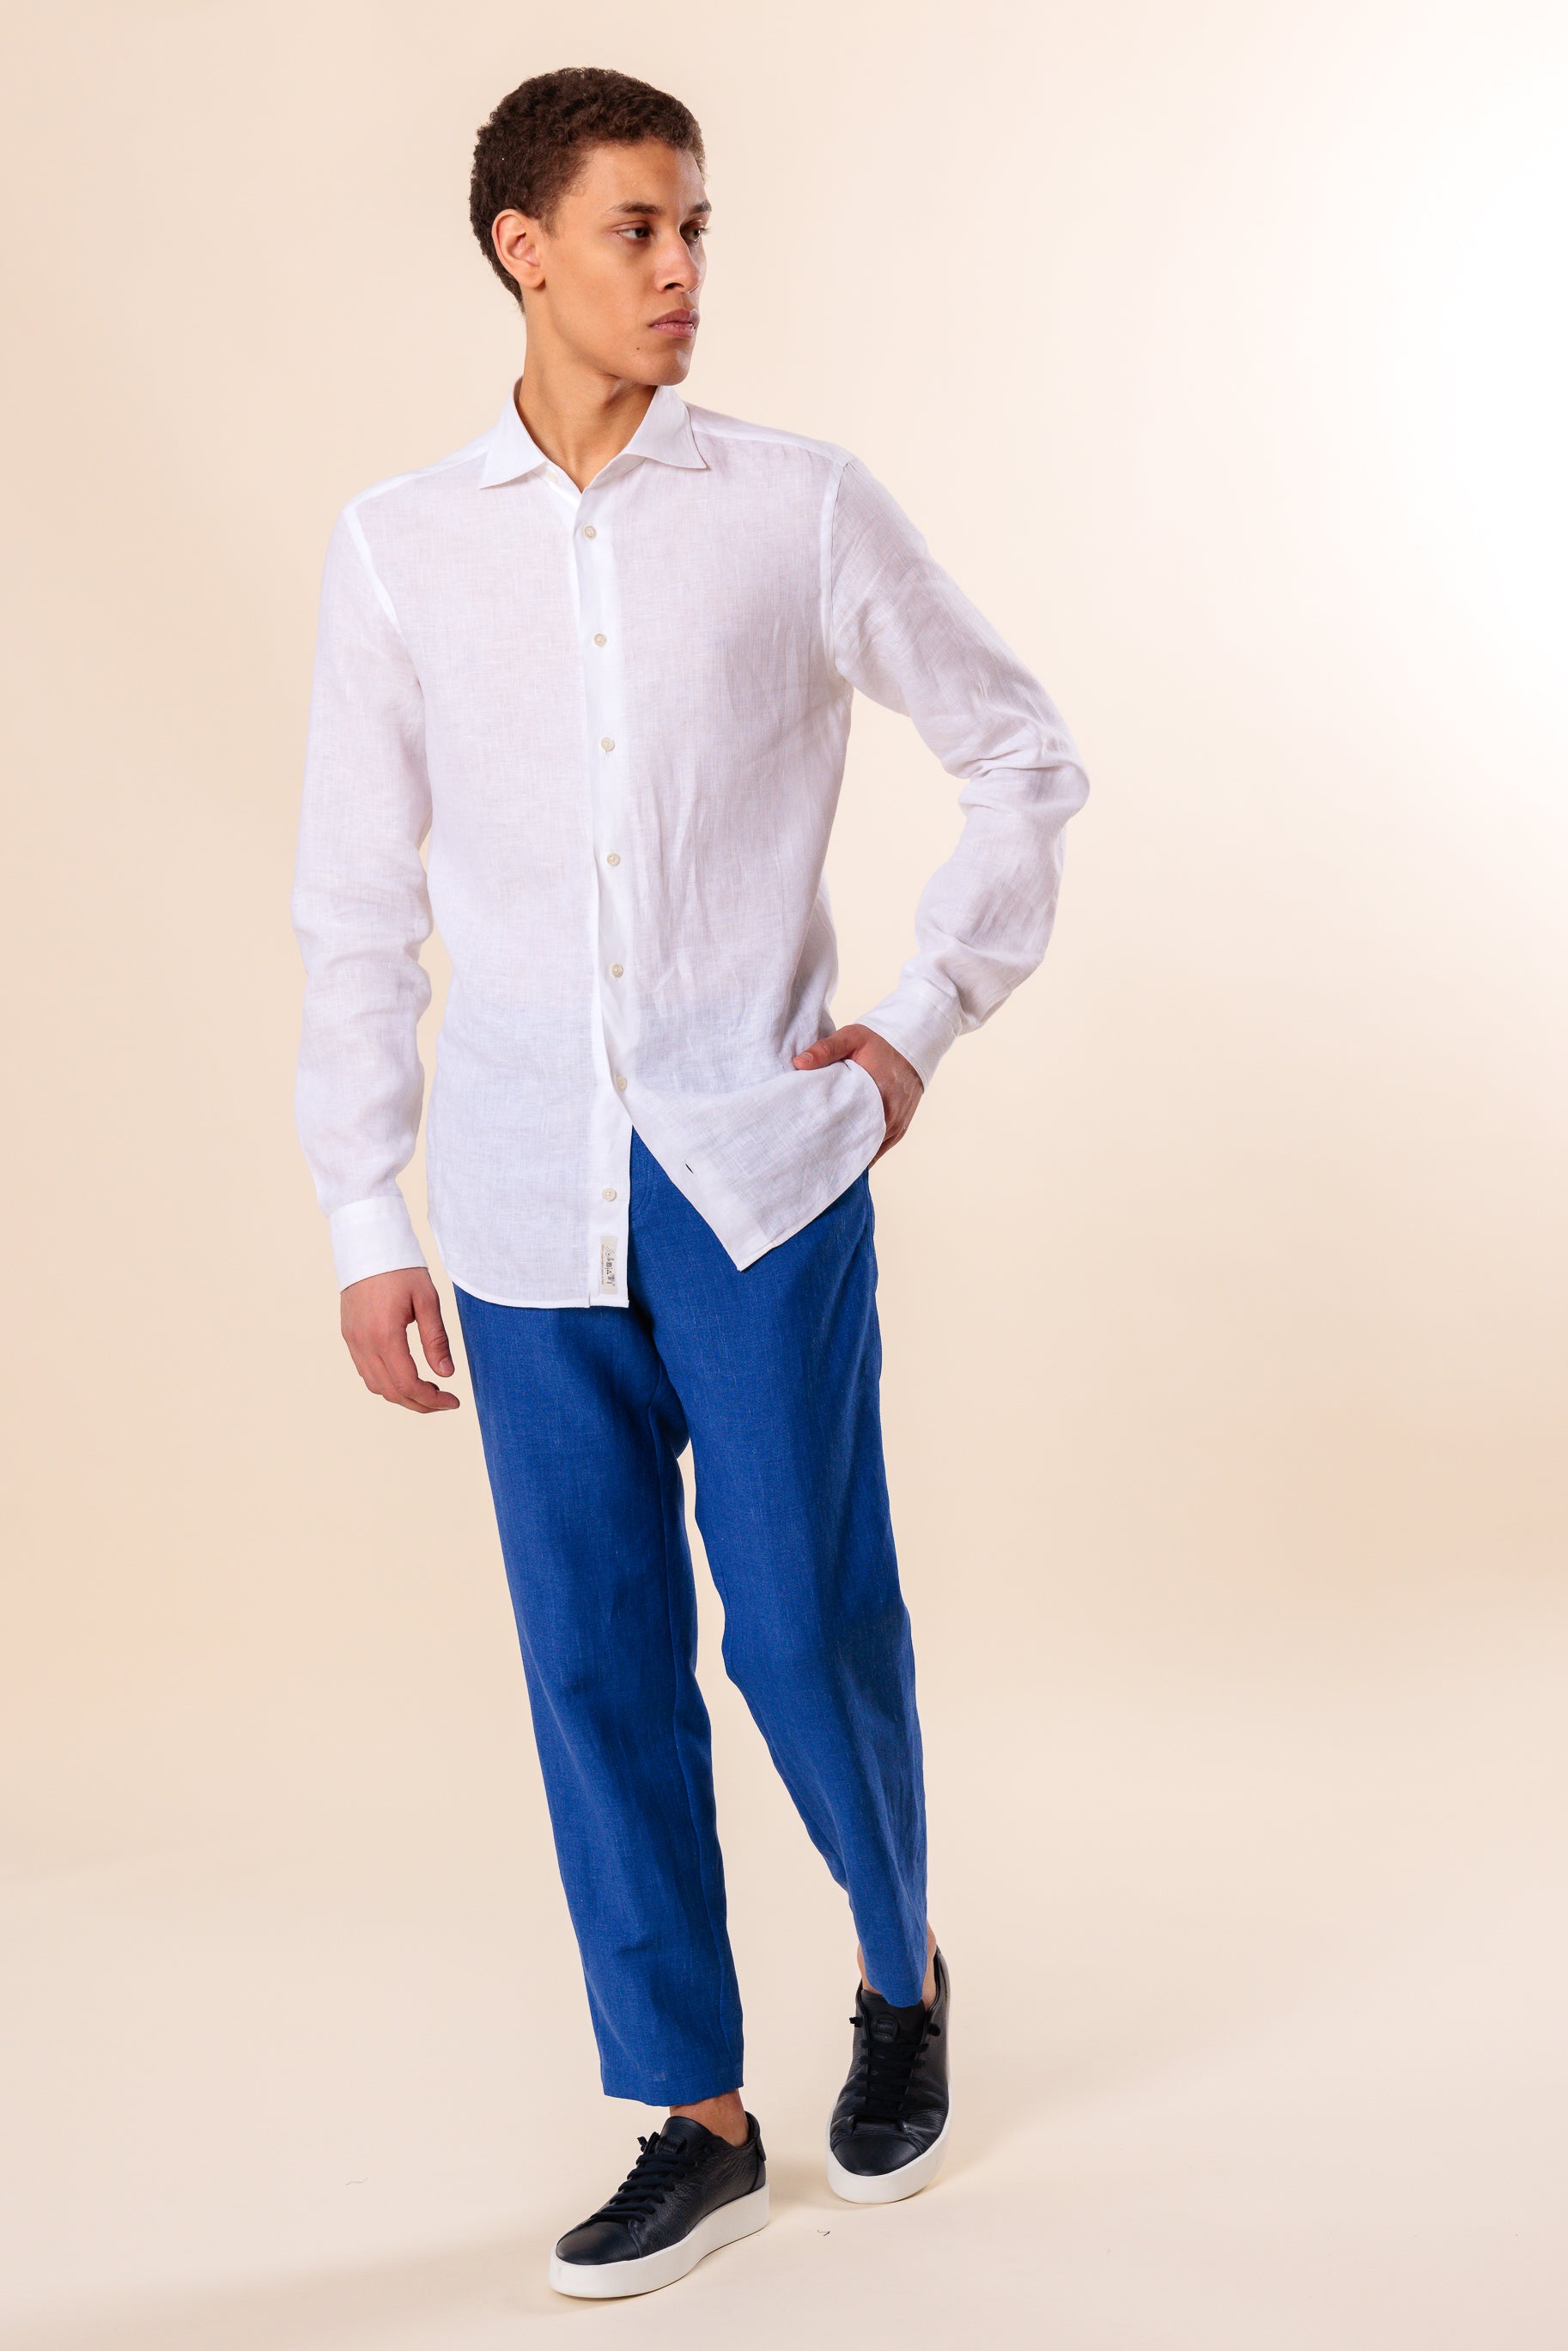 Trousers "Arkadia" / Linen, Wool & Silk by Solbiati